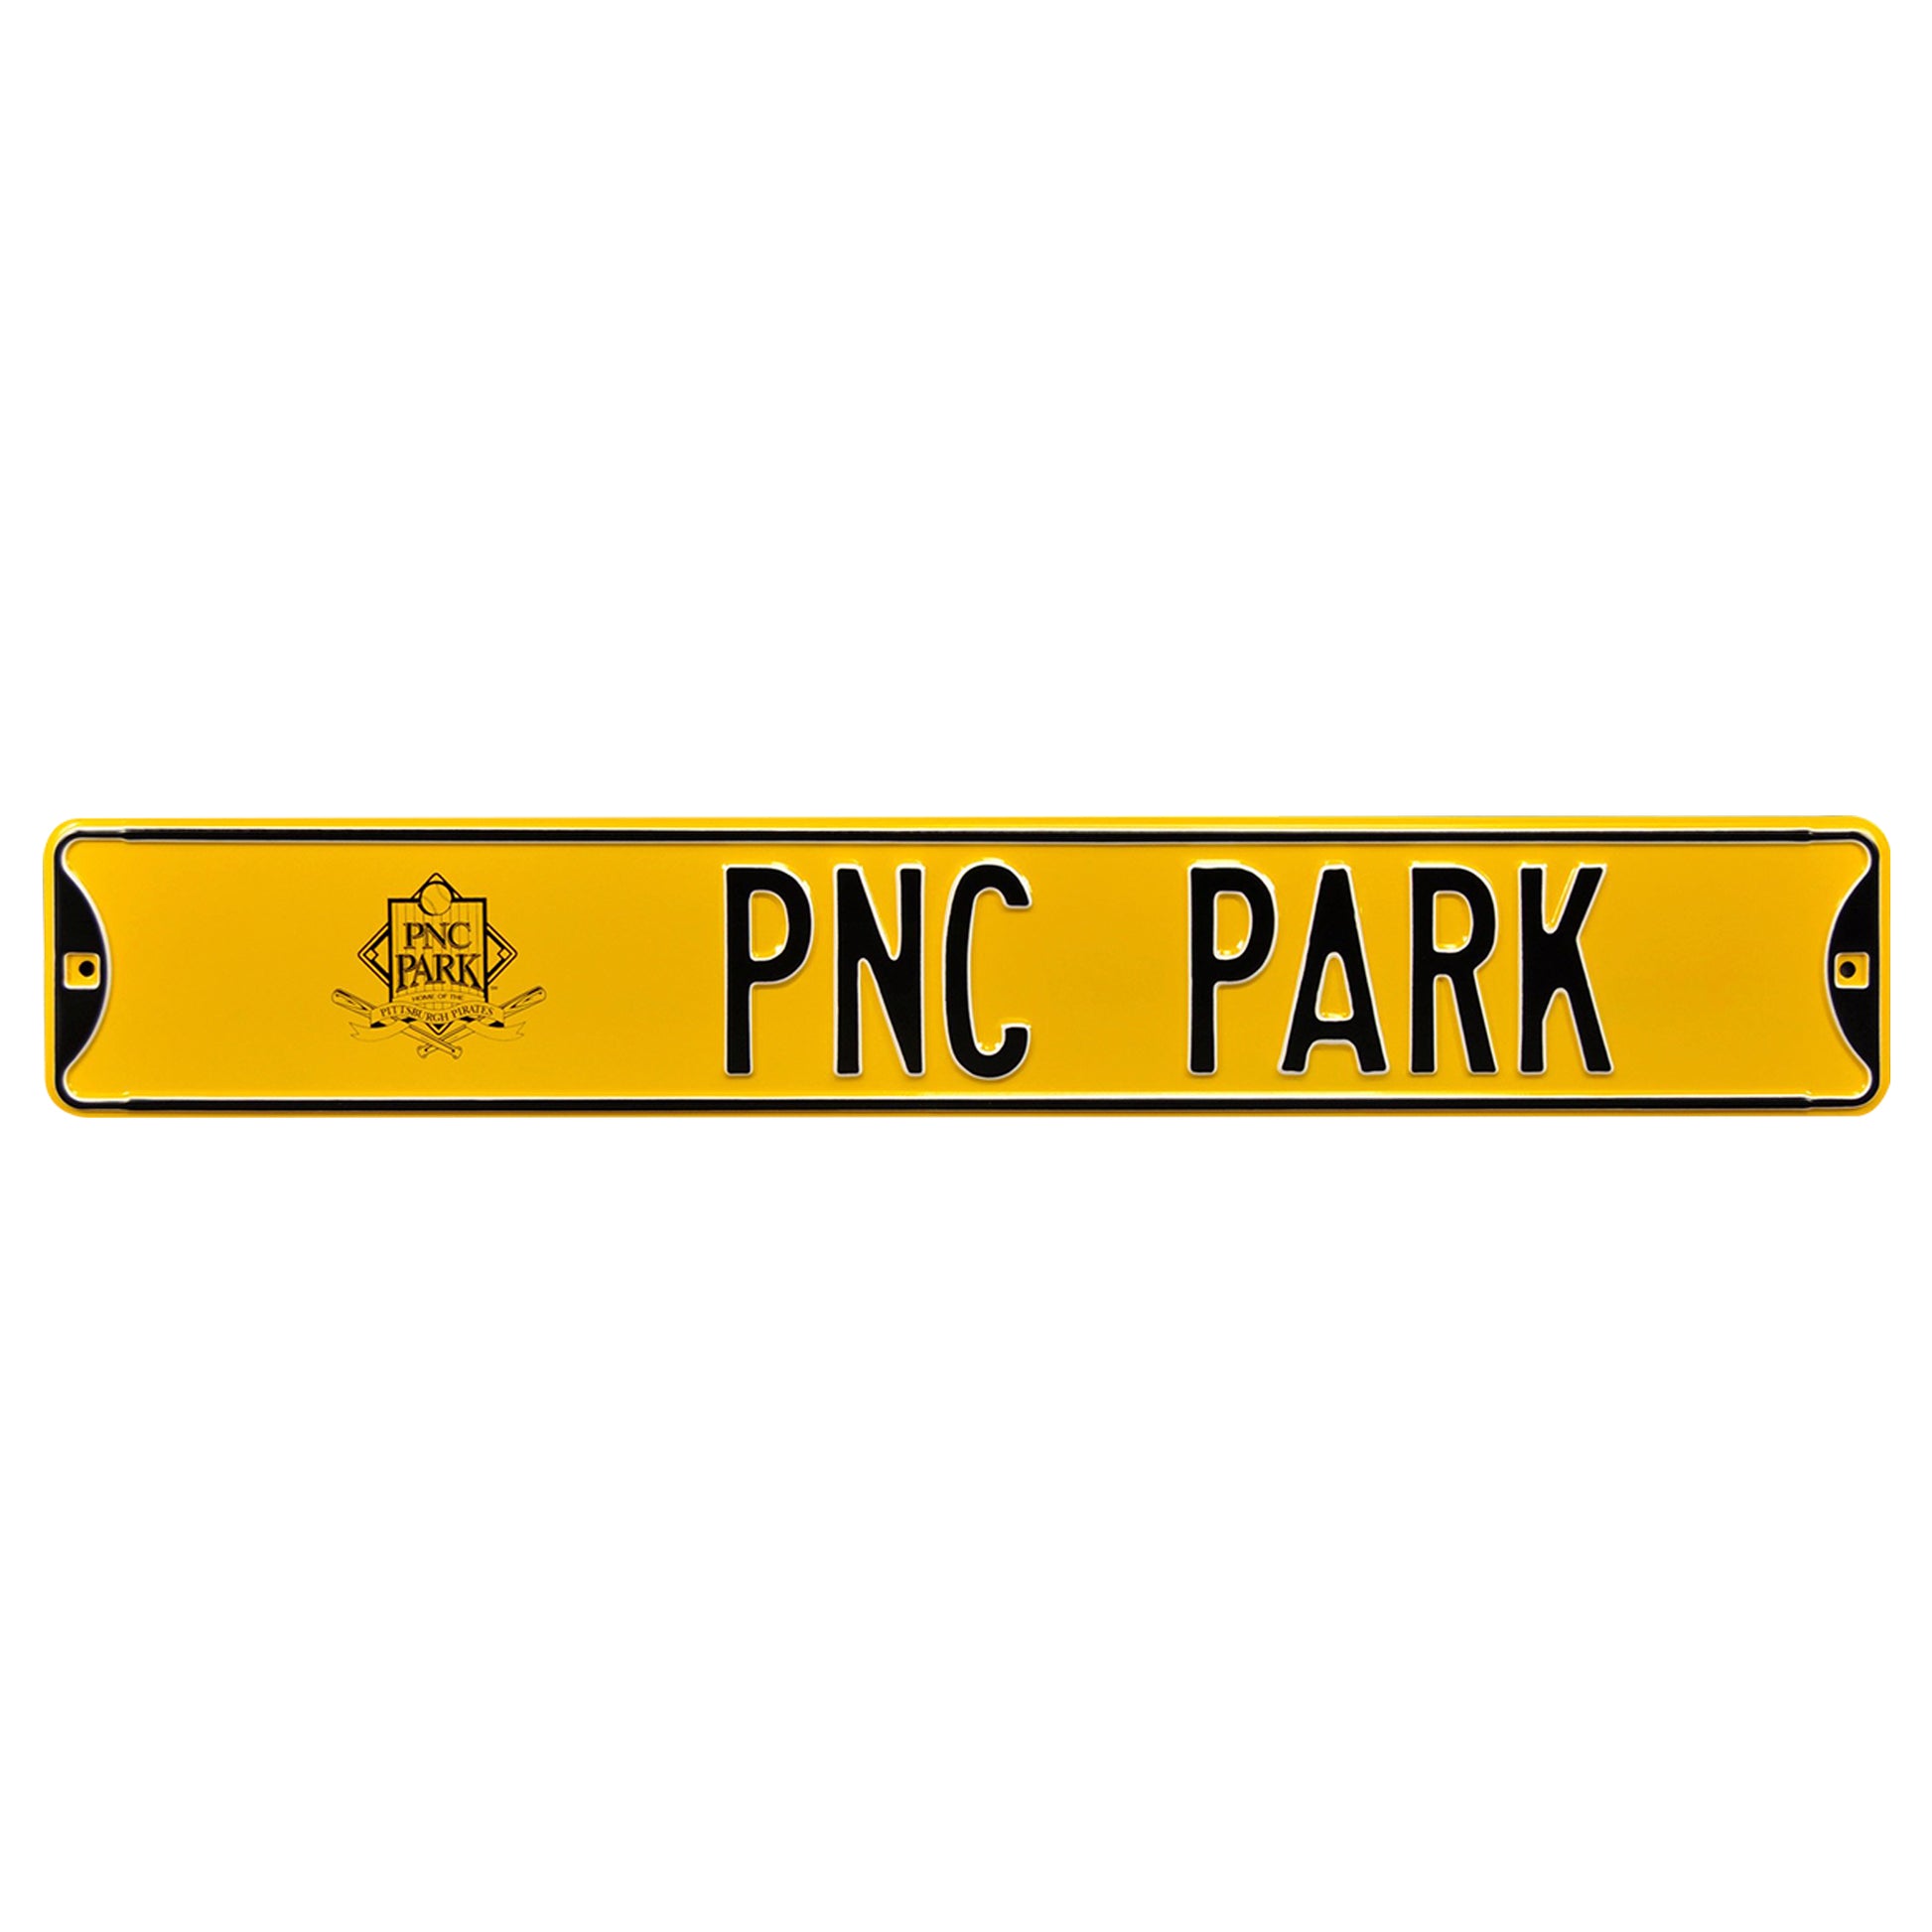 pnc park shop